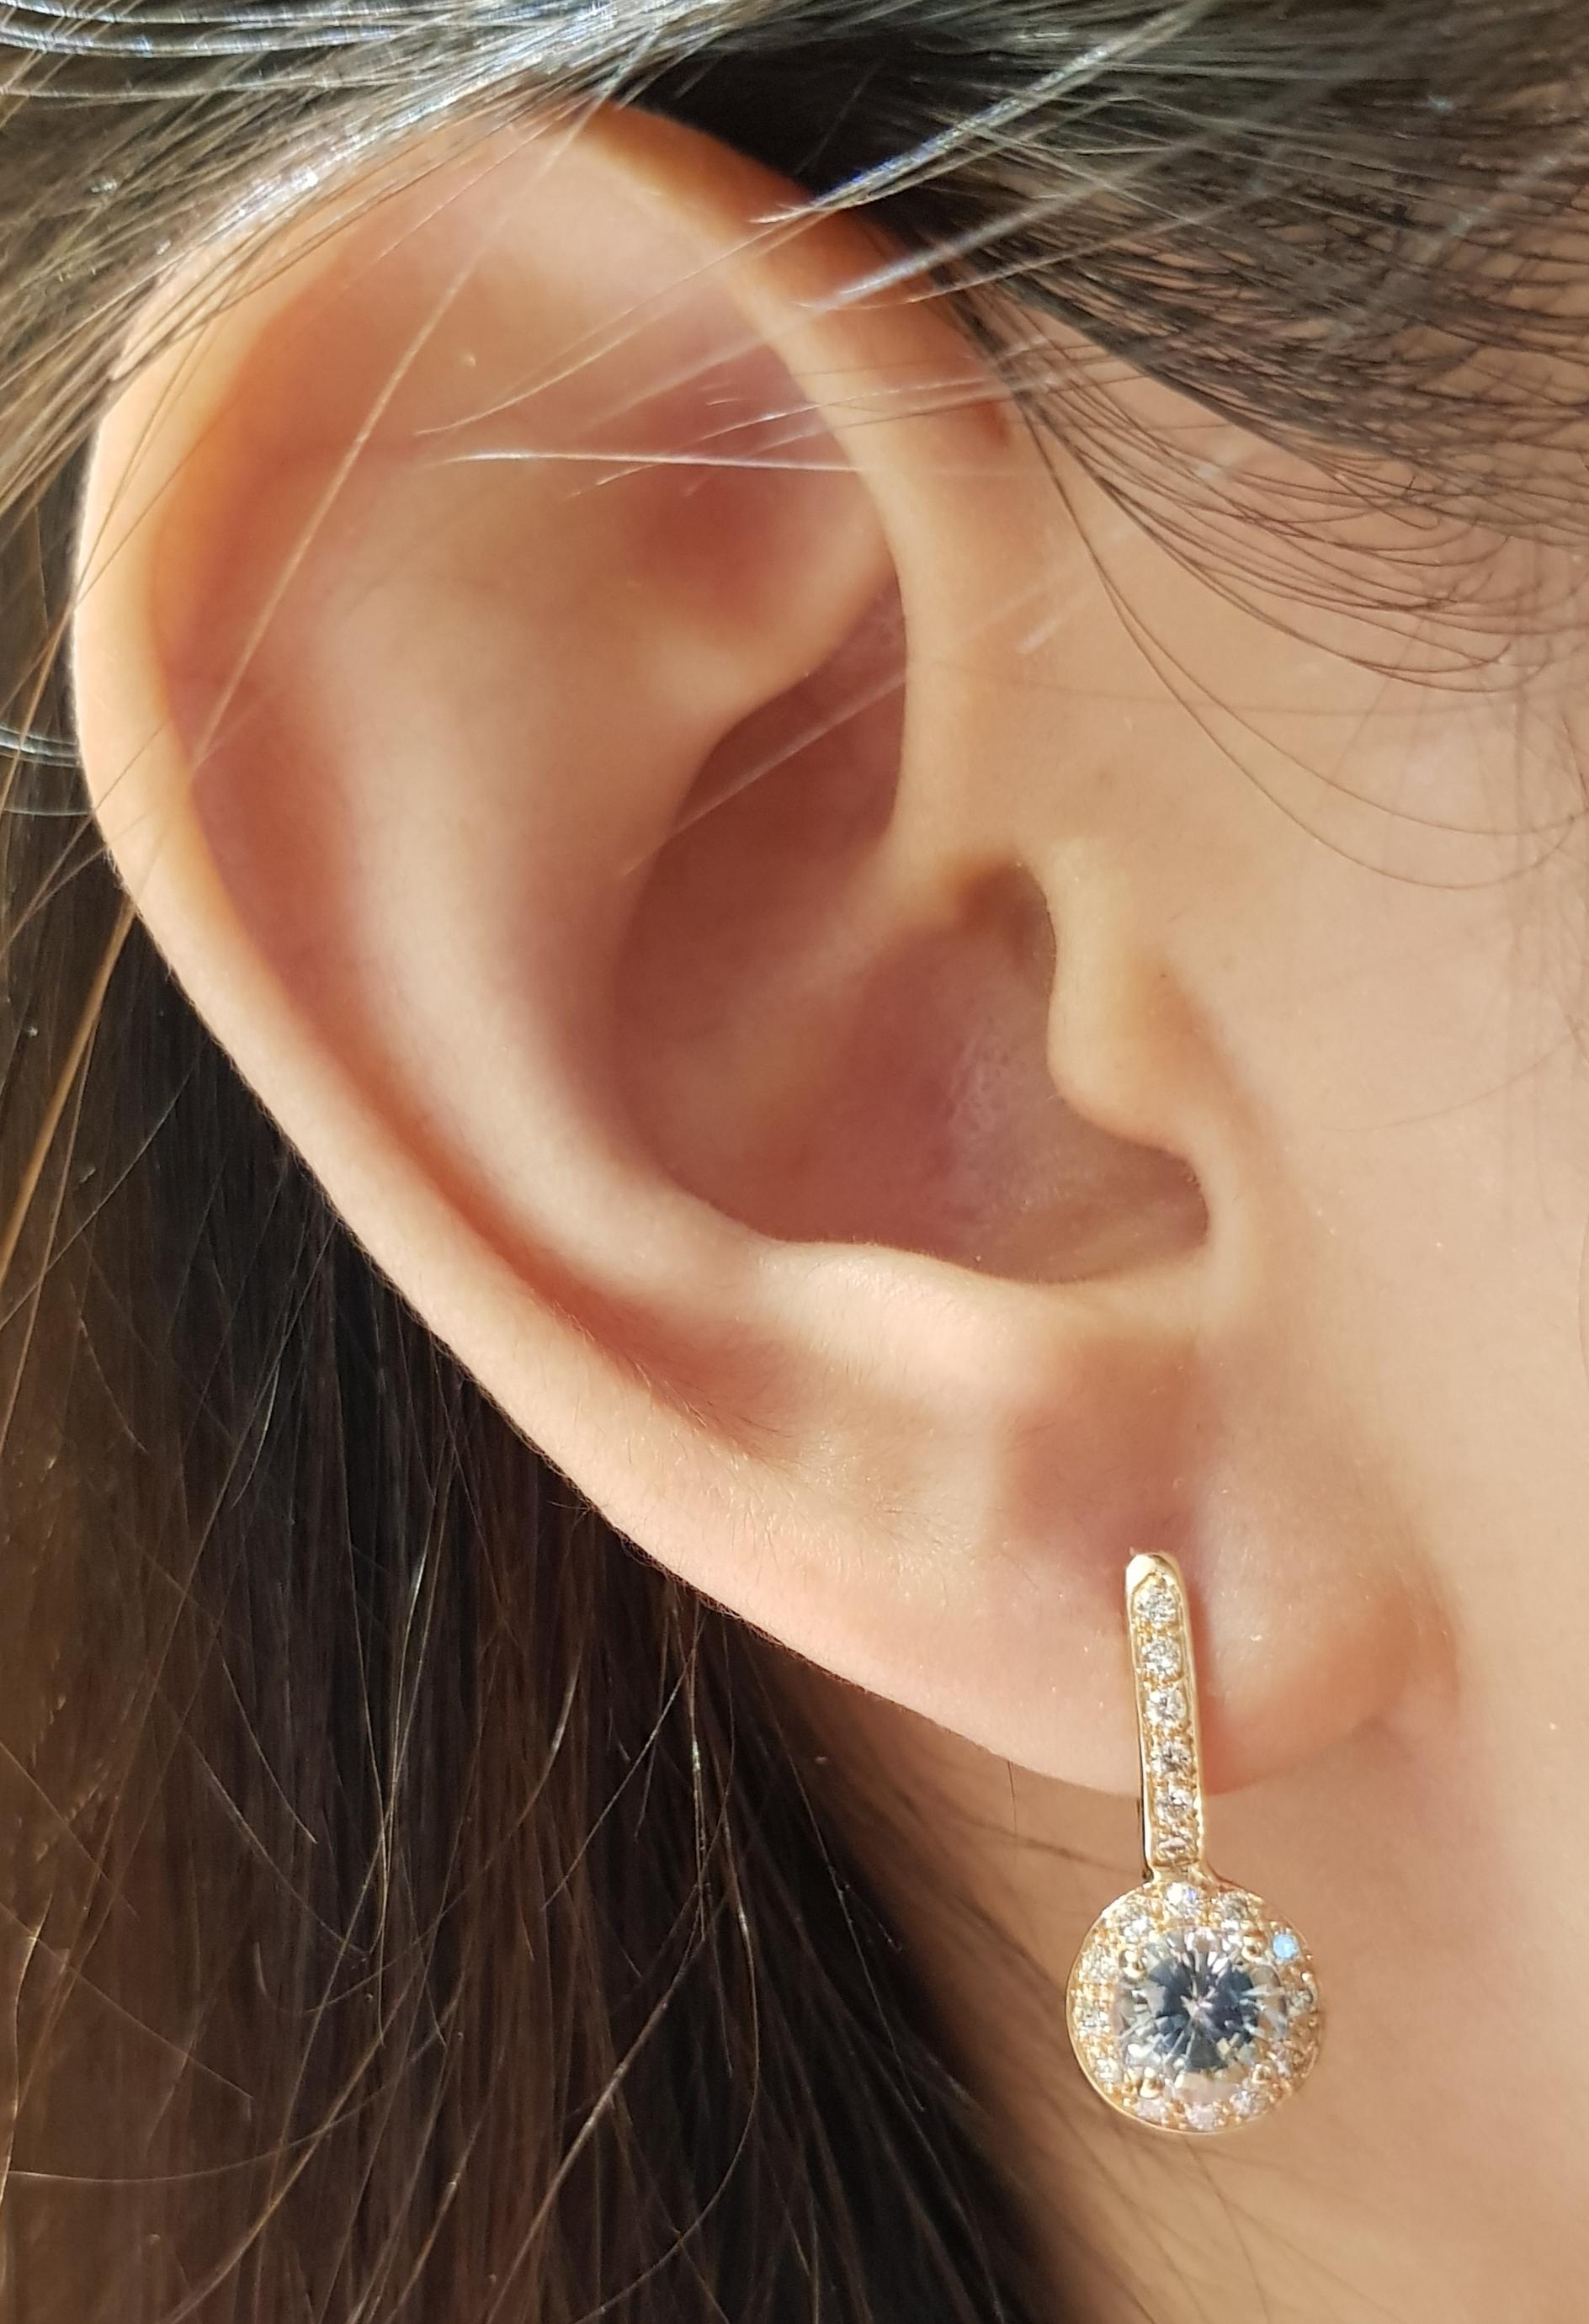 Boucles d'oreilles composées d'un saphir vert de 2,04 carats et d'un diamant brun de 0,38 carat sertis dans une monture en or rose 18 carats

Largeur :  0.7 cm 
Longueur :  1.8 cm
Poids total : 4,5 grammes

